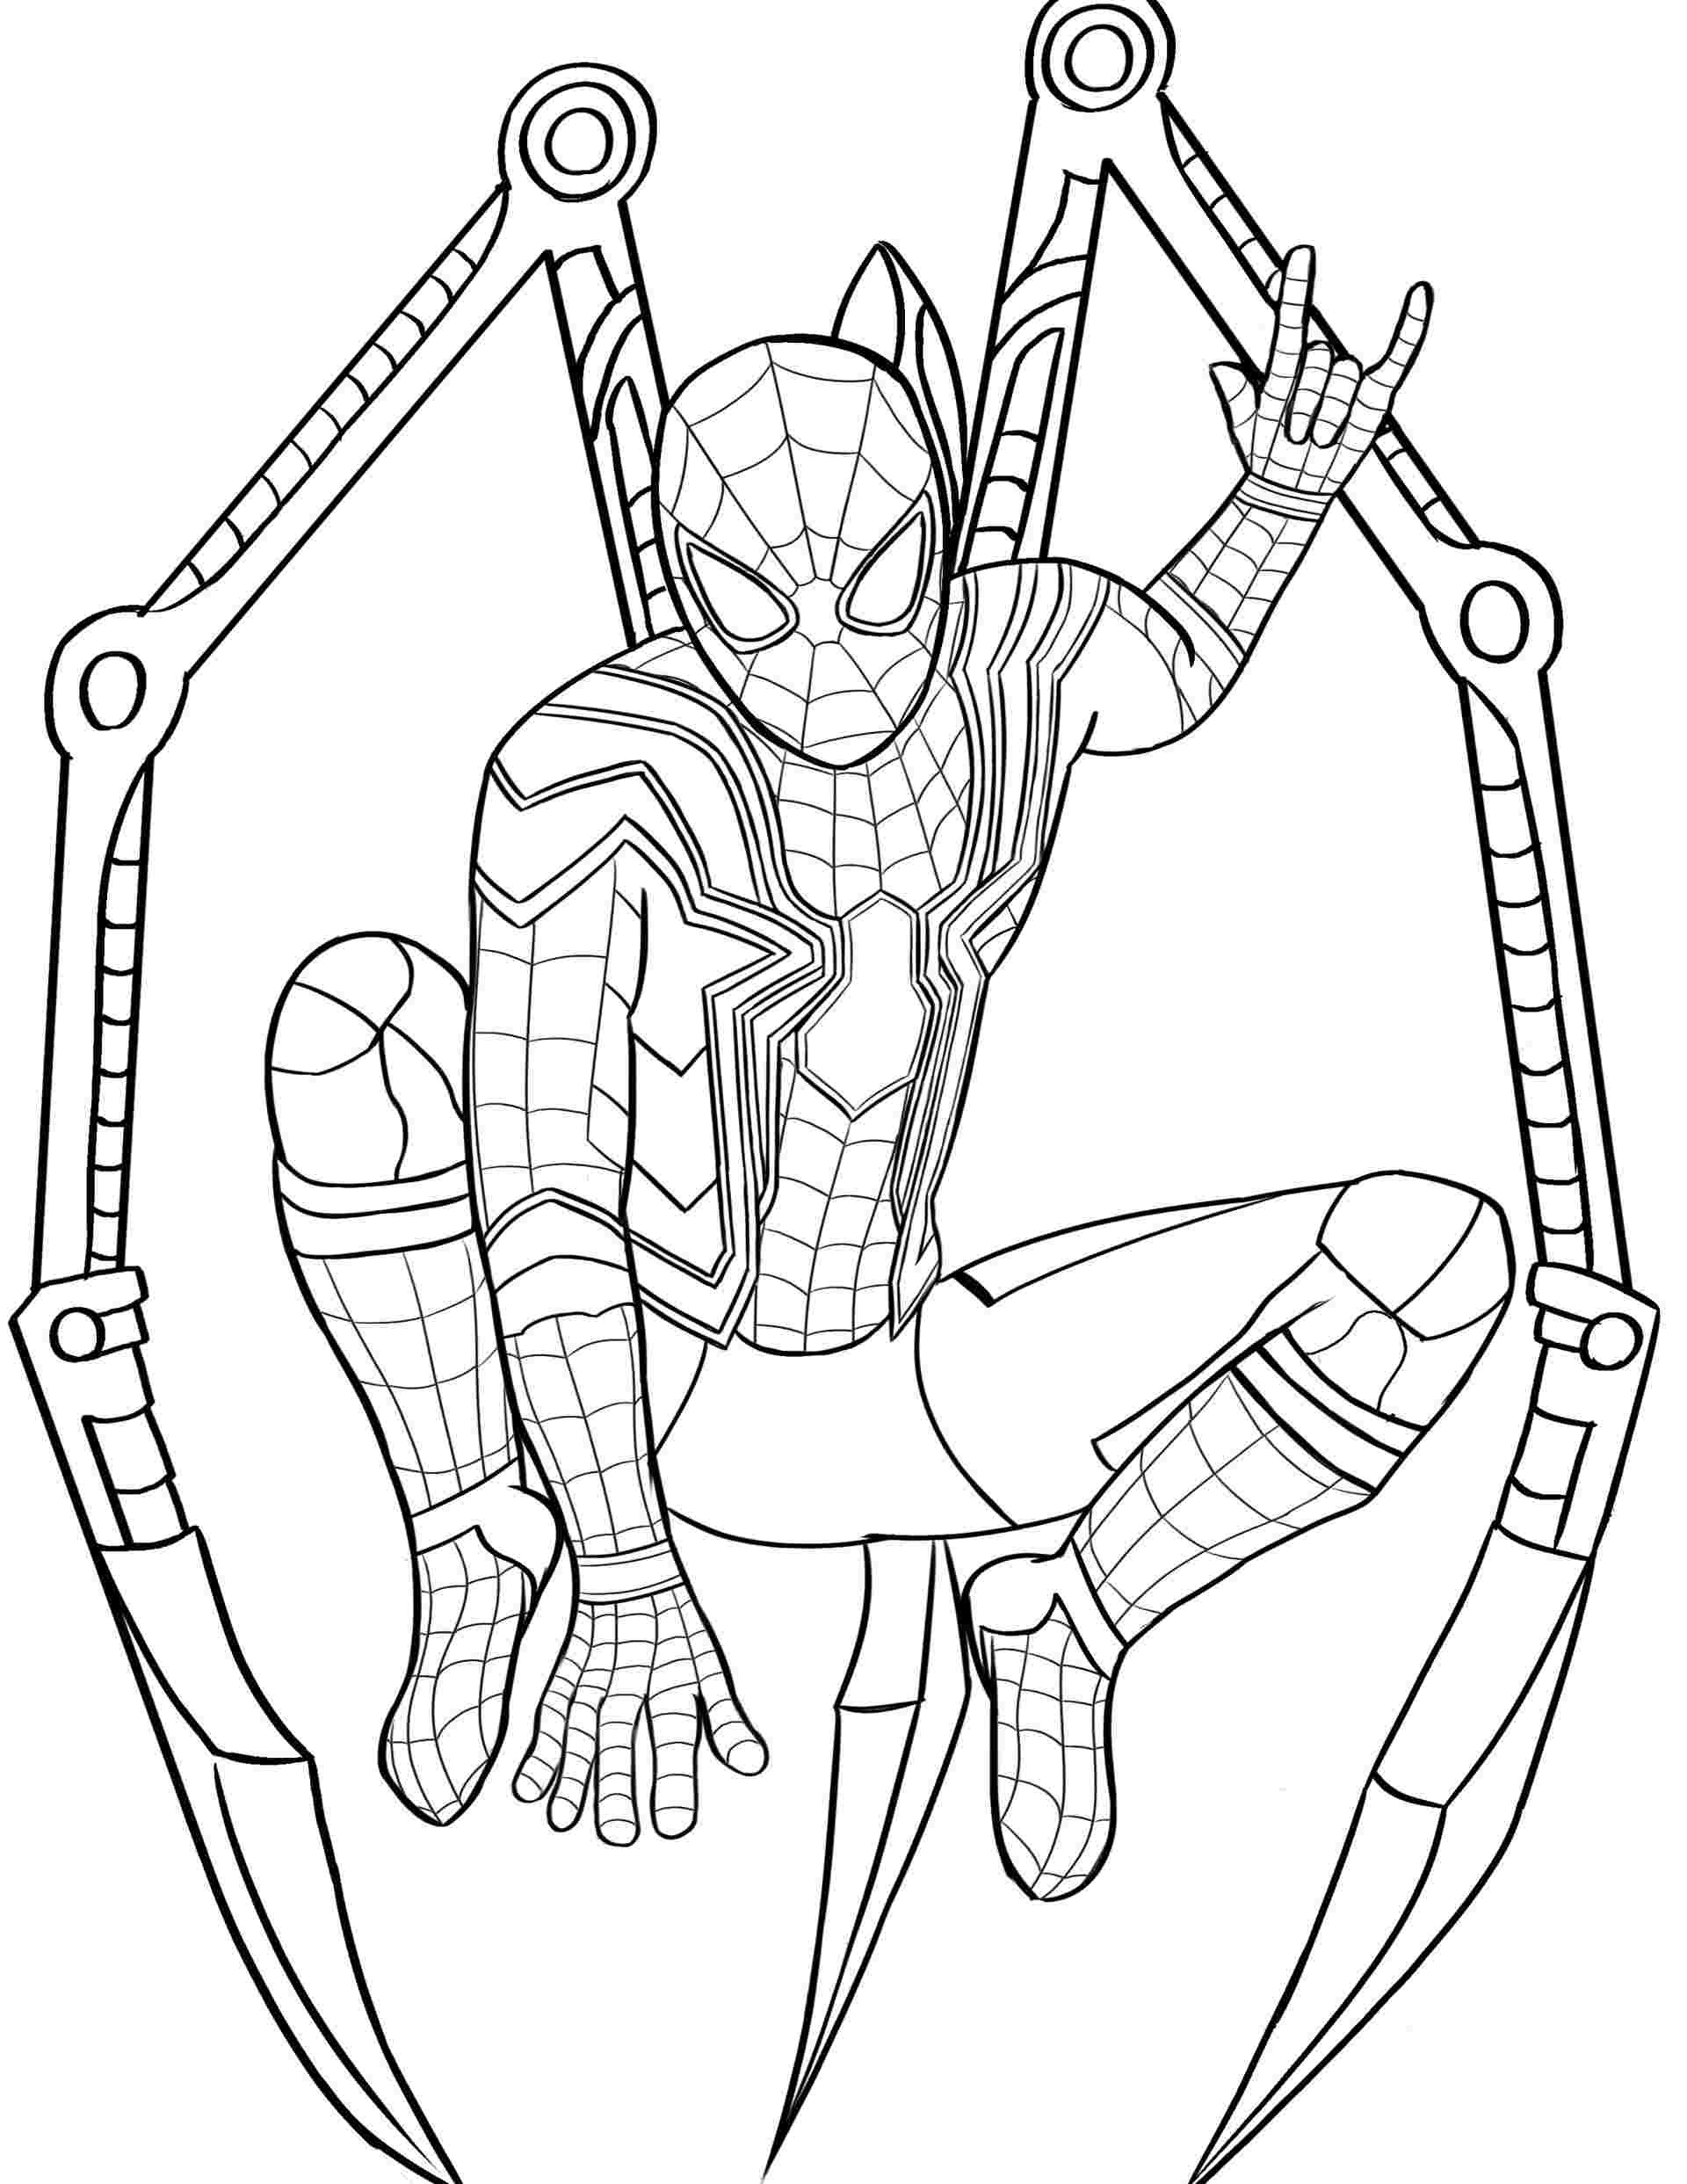 Spiderman Peter Parker Coloring Pages - SheetalColor.com